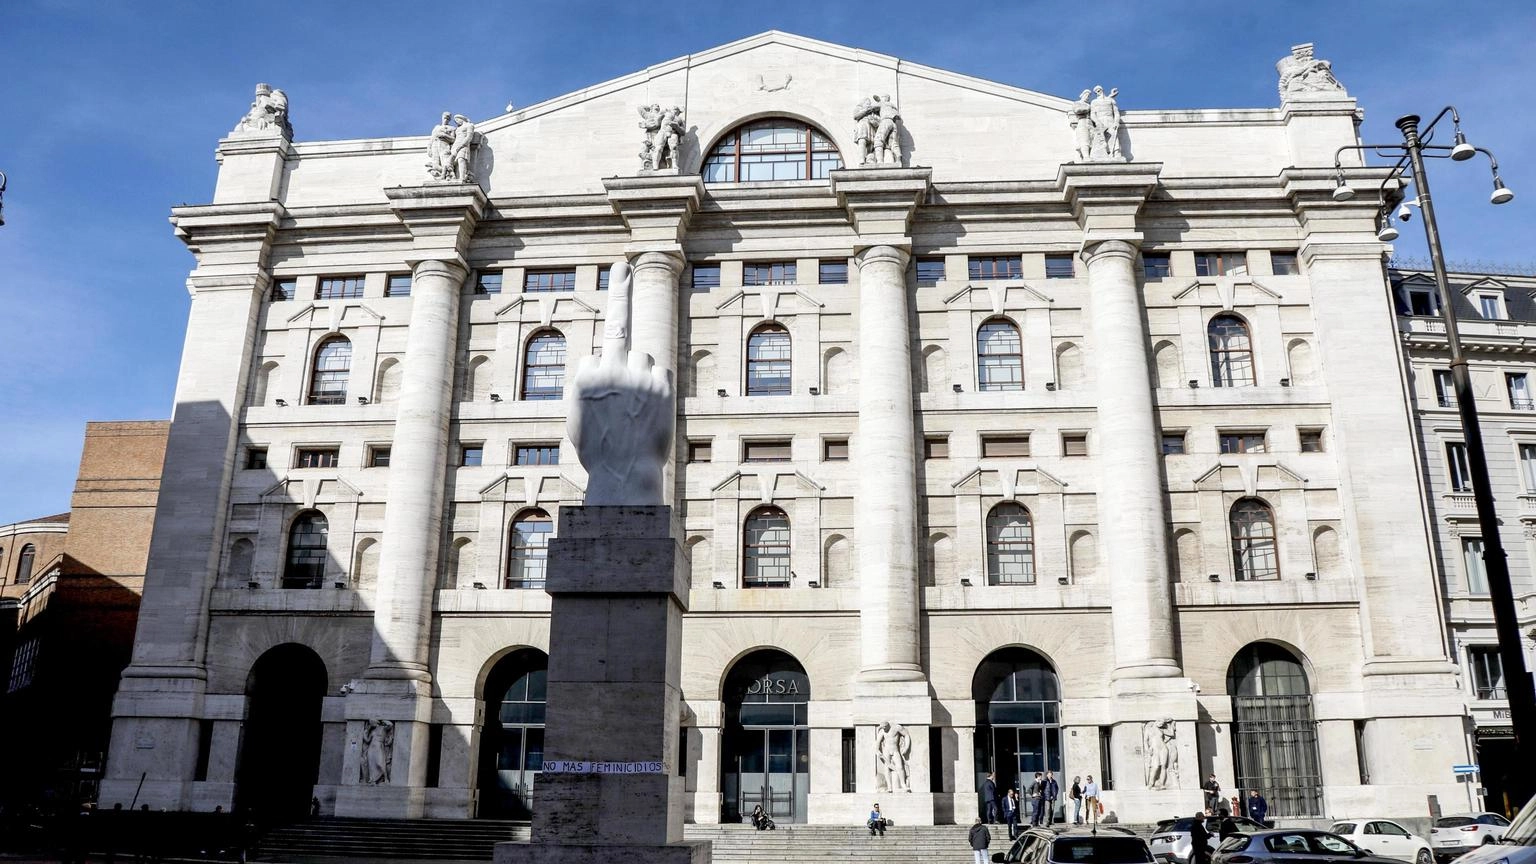 Borsa: Milano dimezza rialzo (+0,2%), corre Saipem, giù Banco